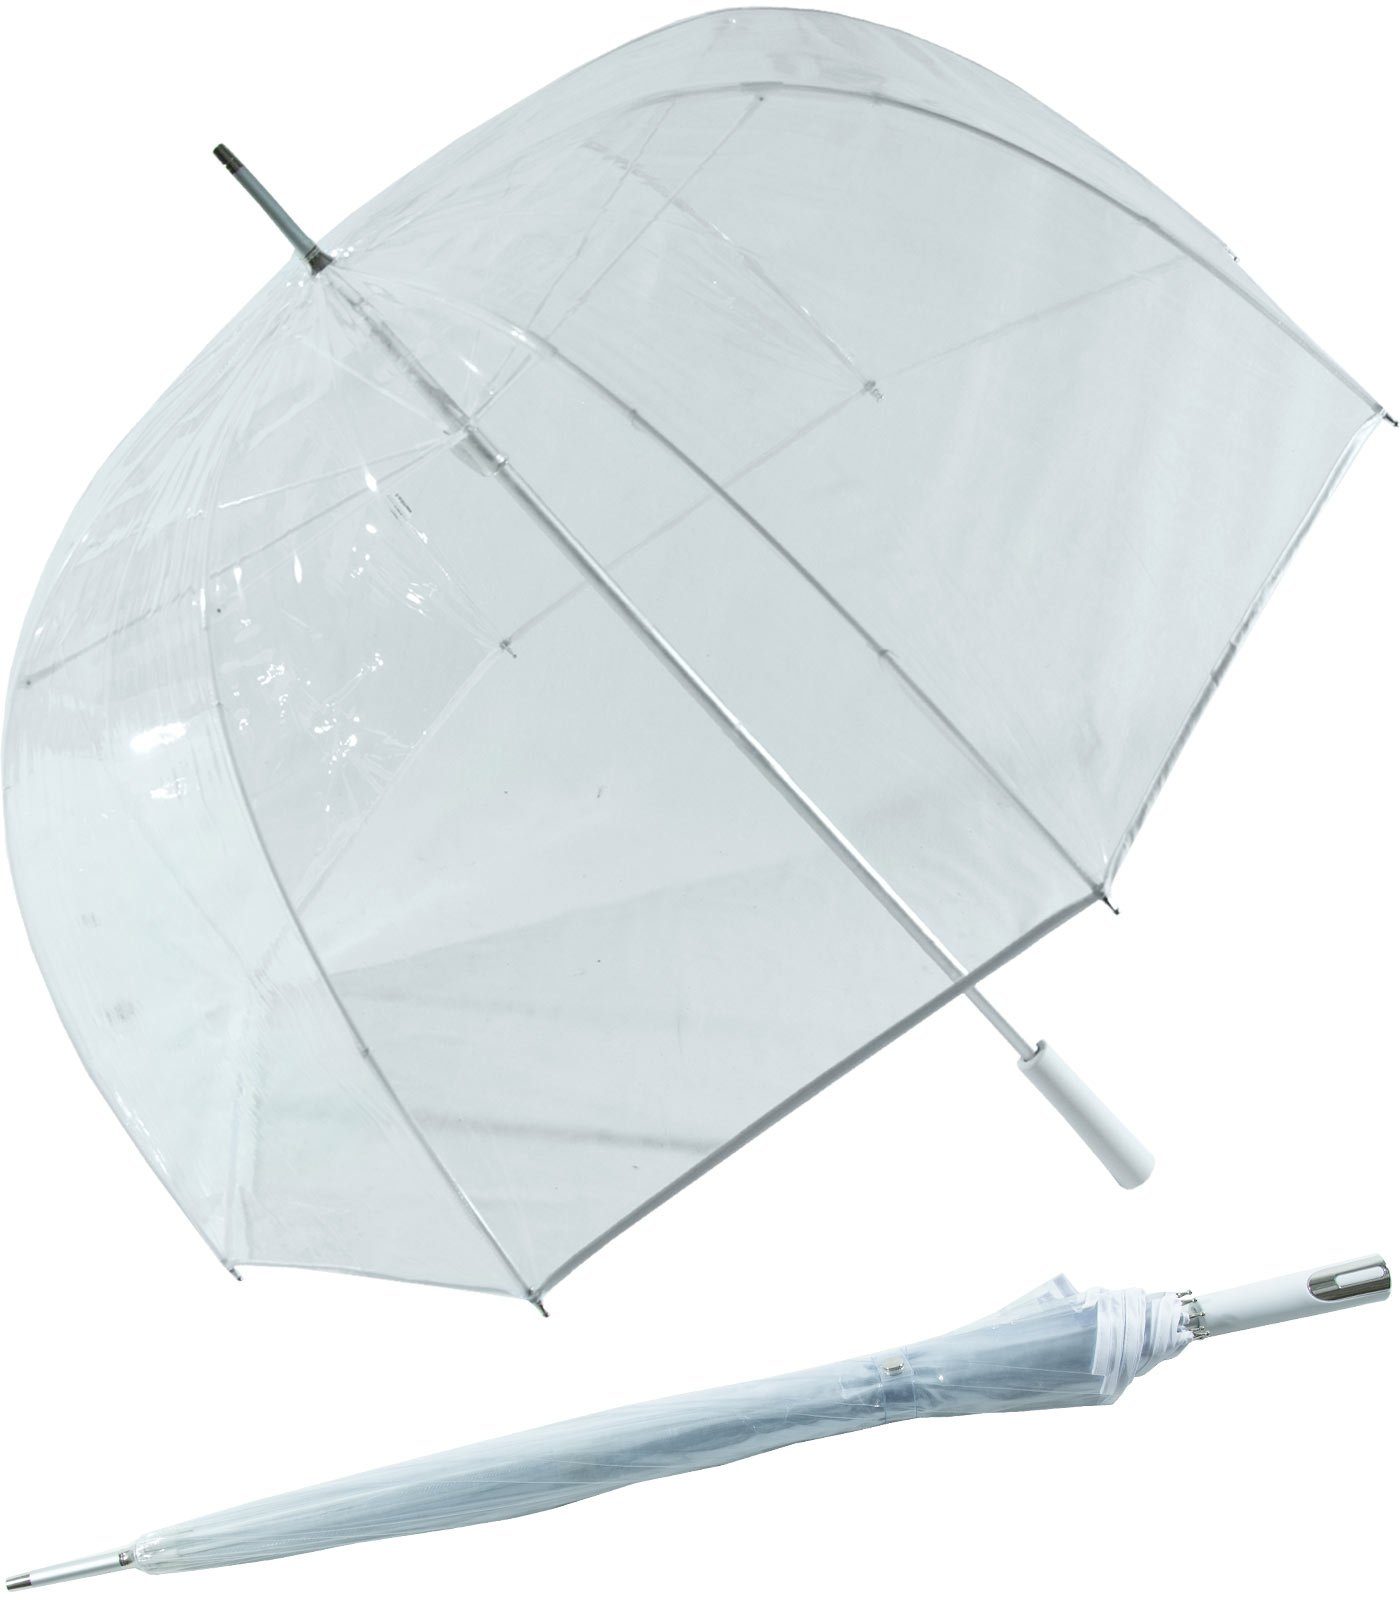 Impliva Langregenschirm Falcone® transparent, durchsichtig durchsichtig Glockenschirm weiß XL